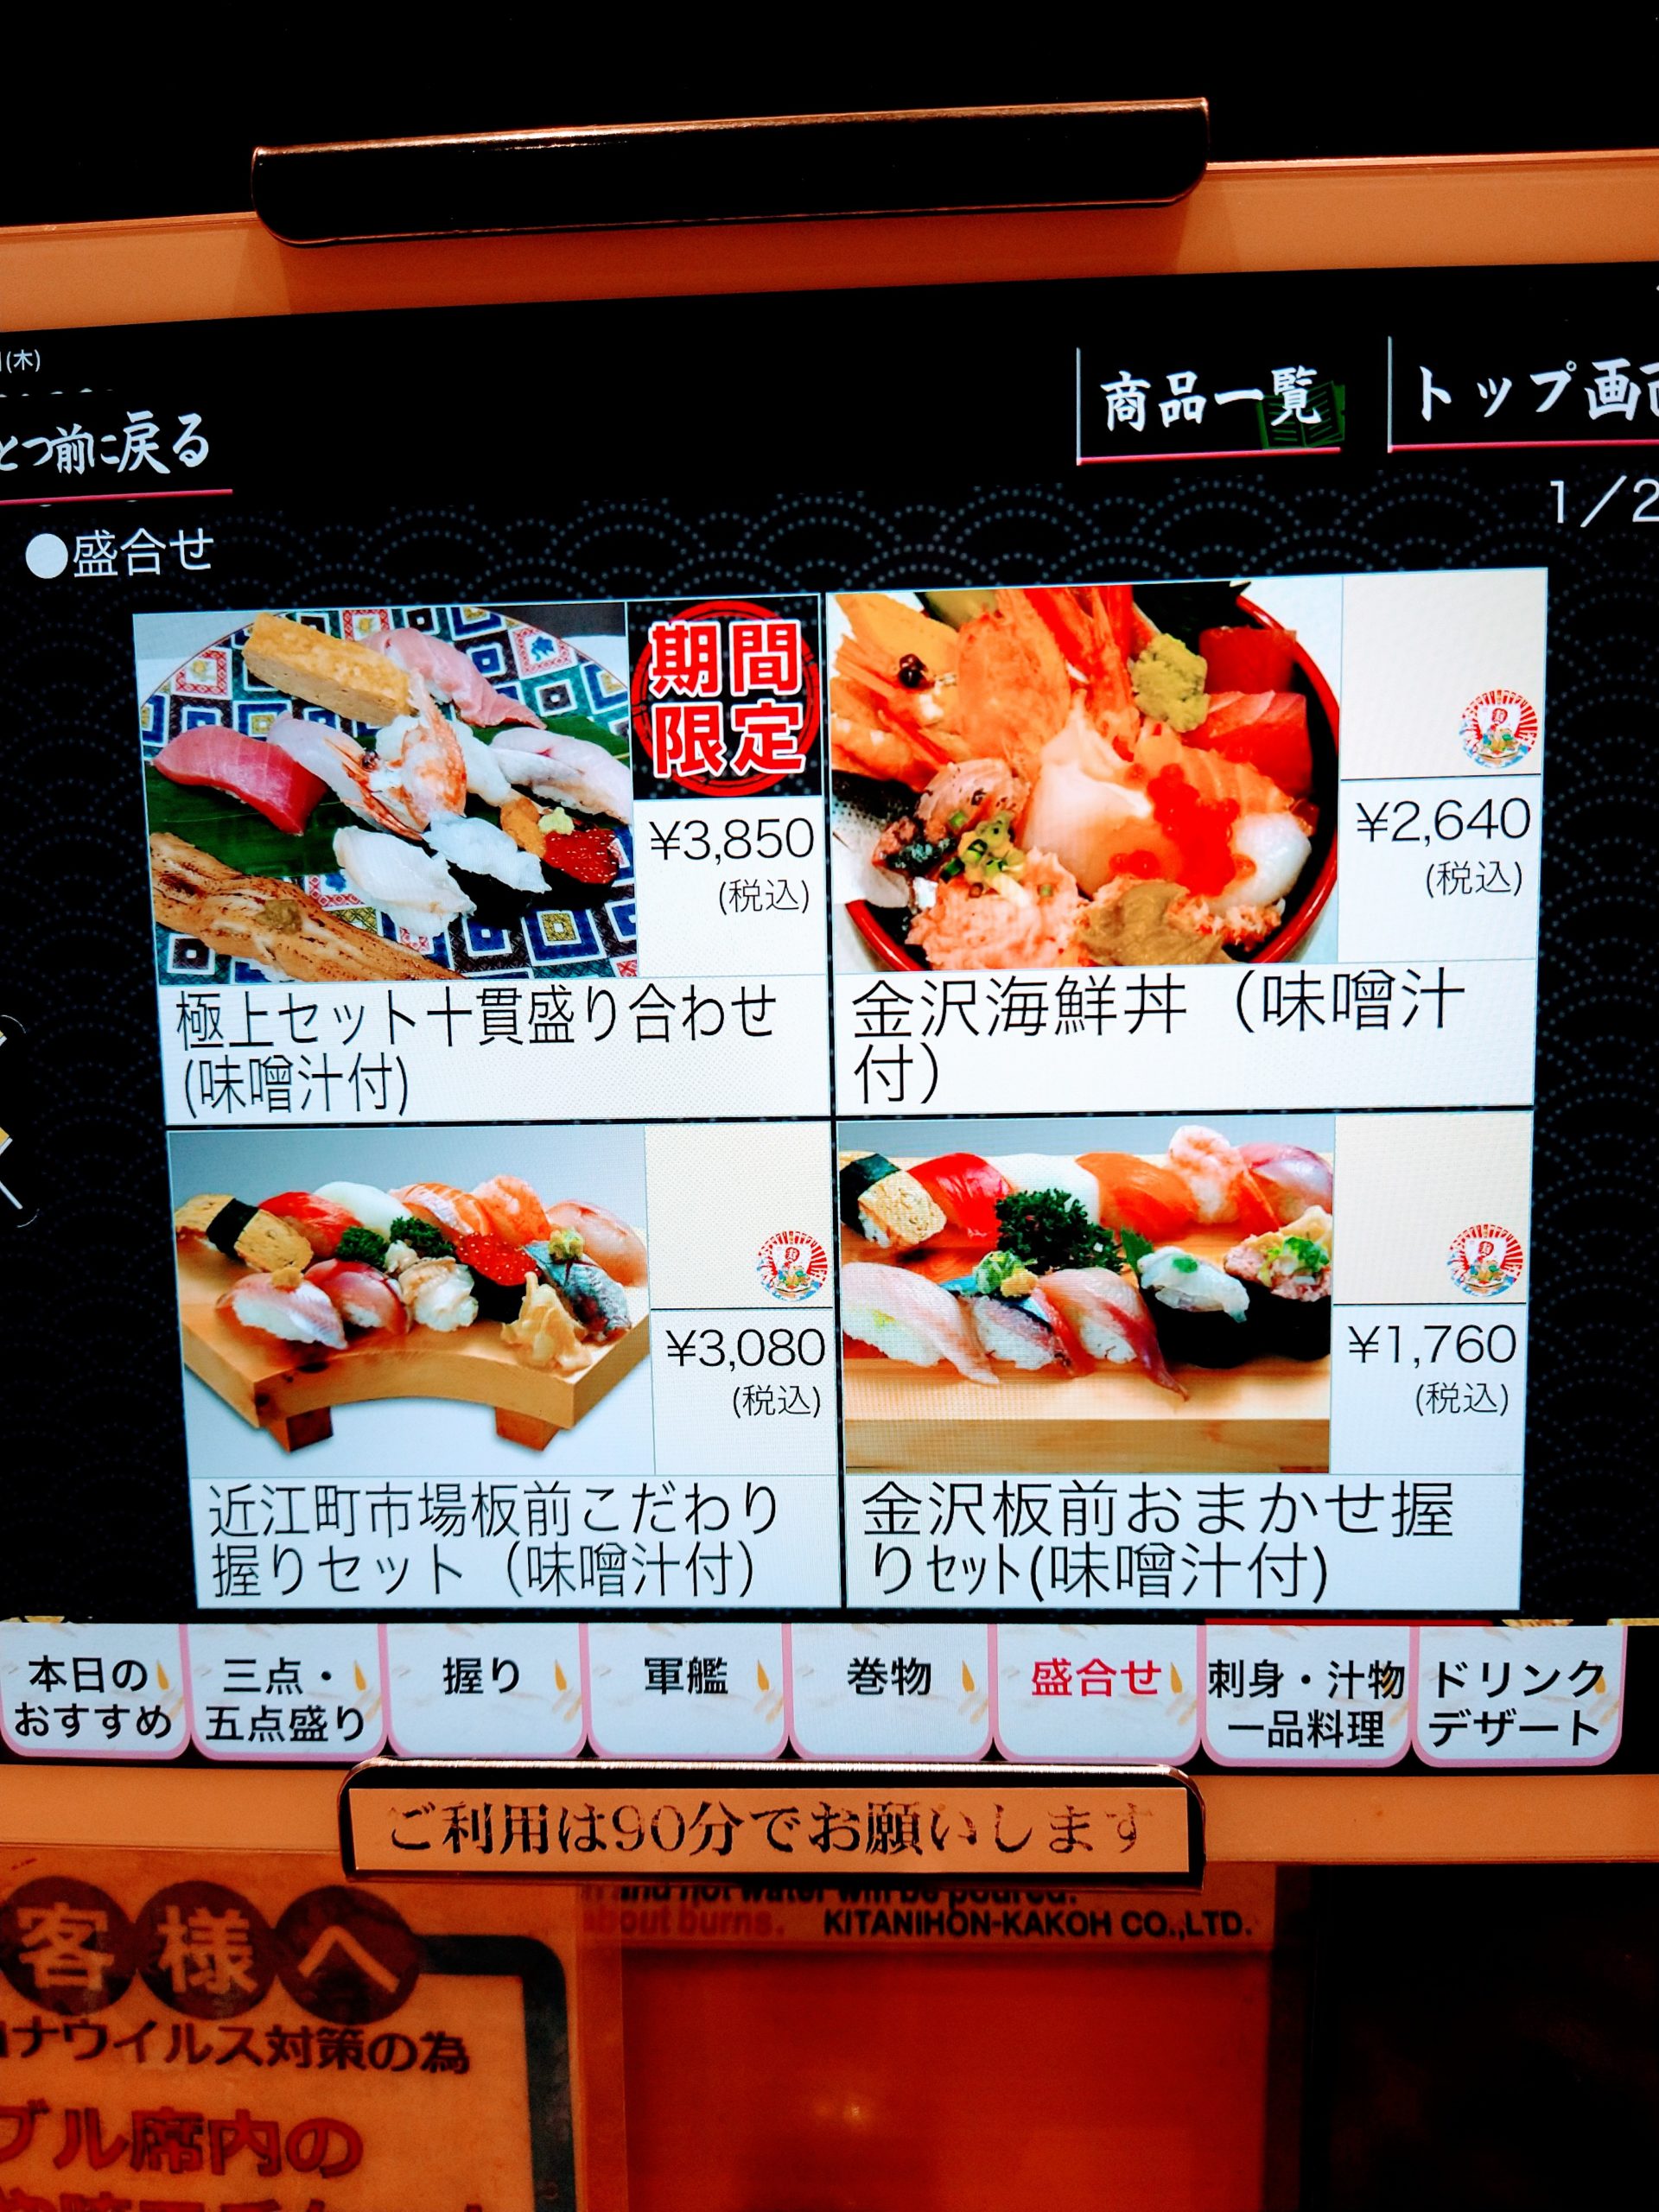 morimori-sushi-menu-32